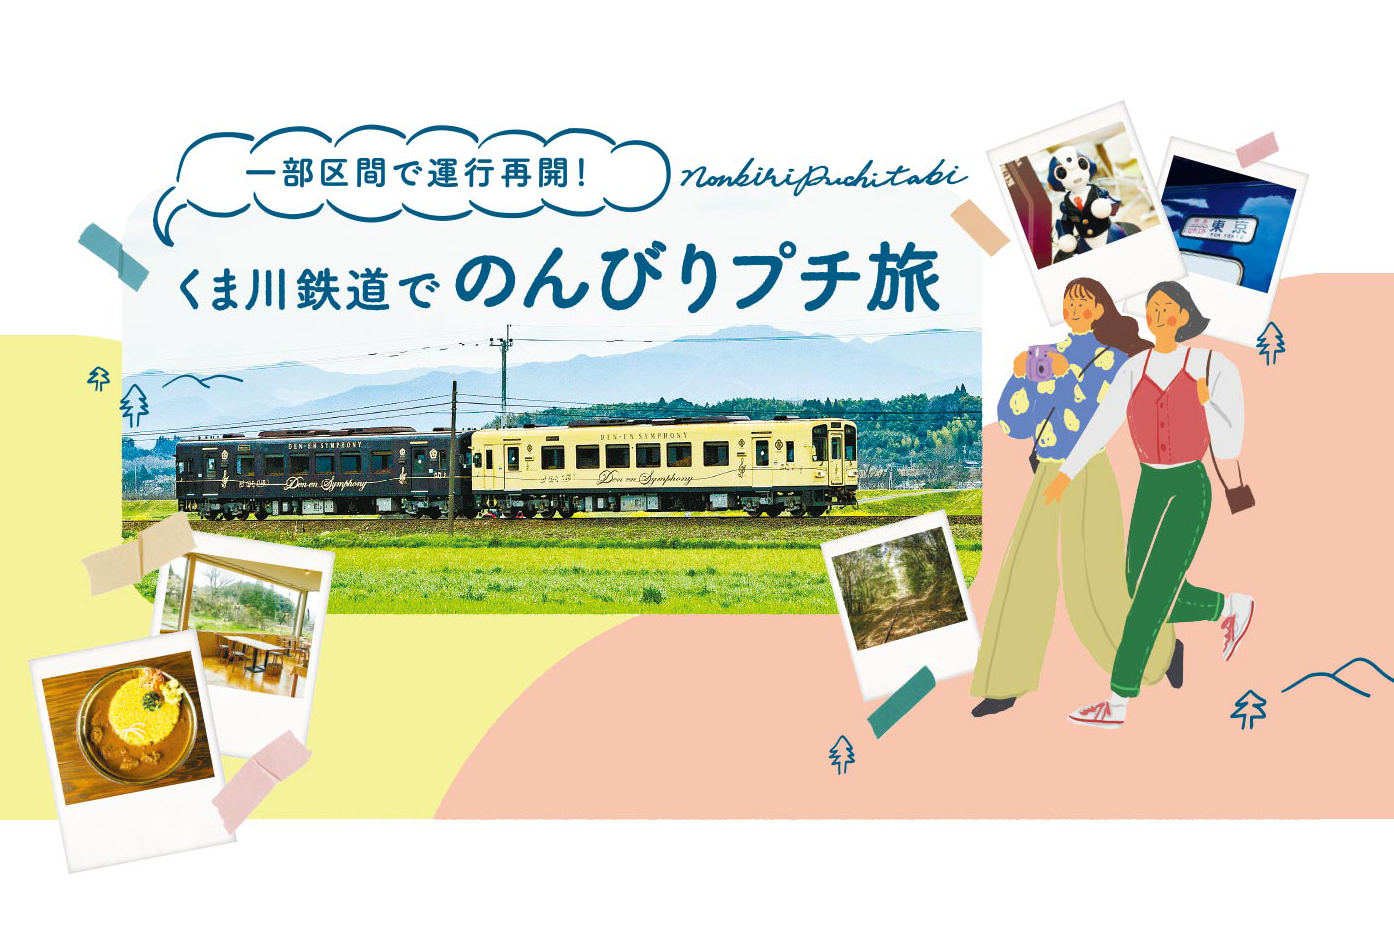 一部区間で運用再開！ くま川鉄道でのんびりプチ旅